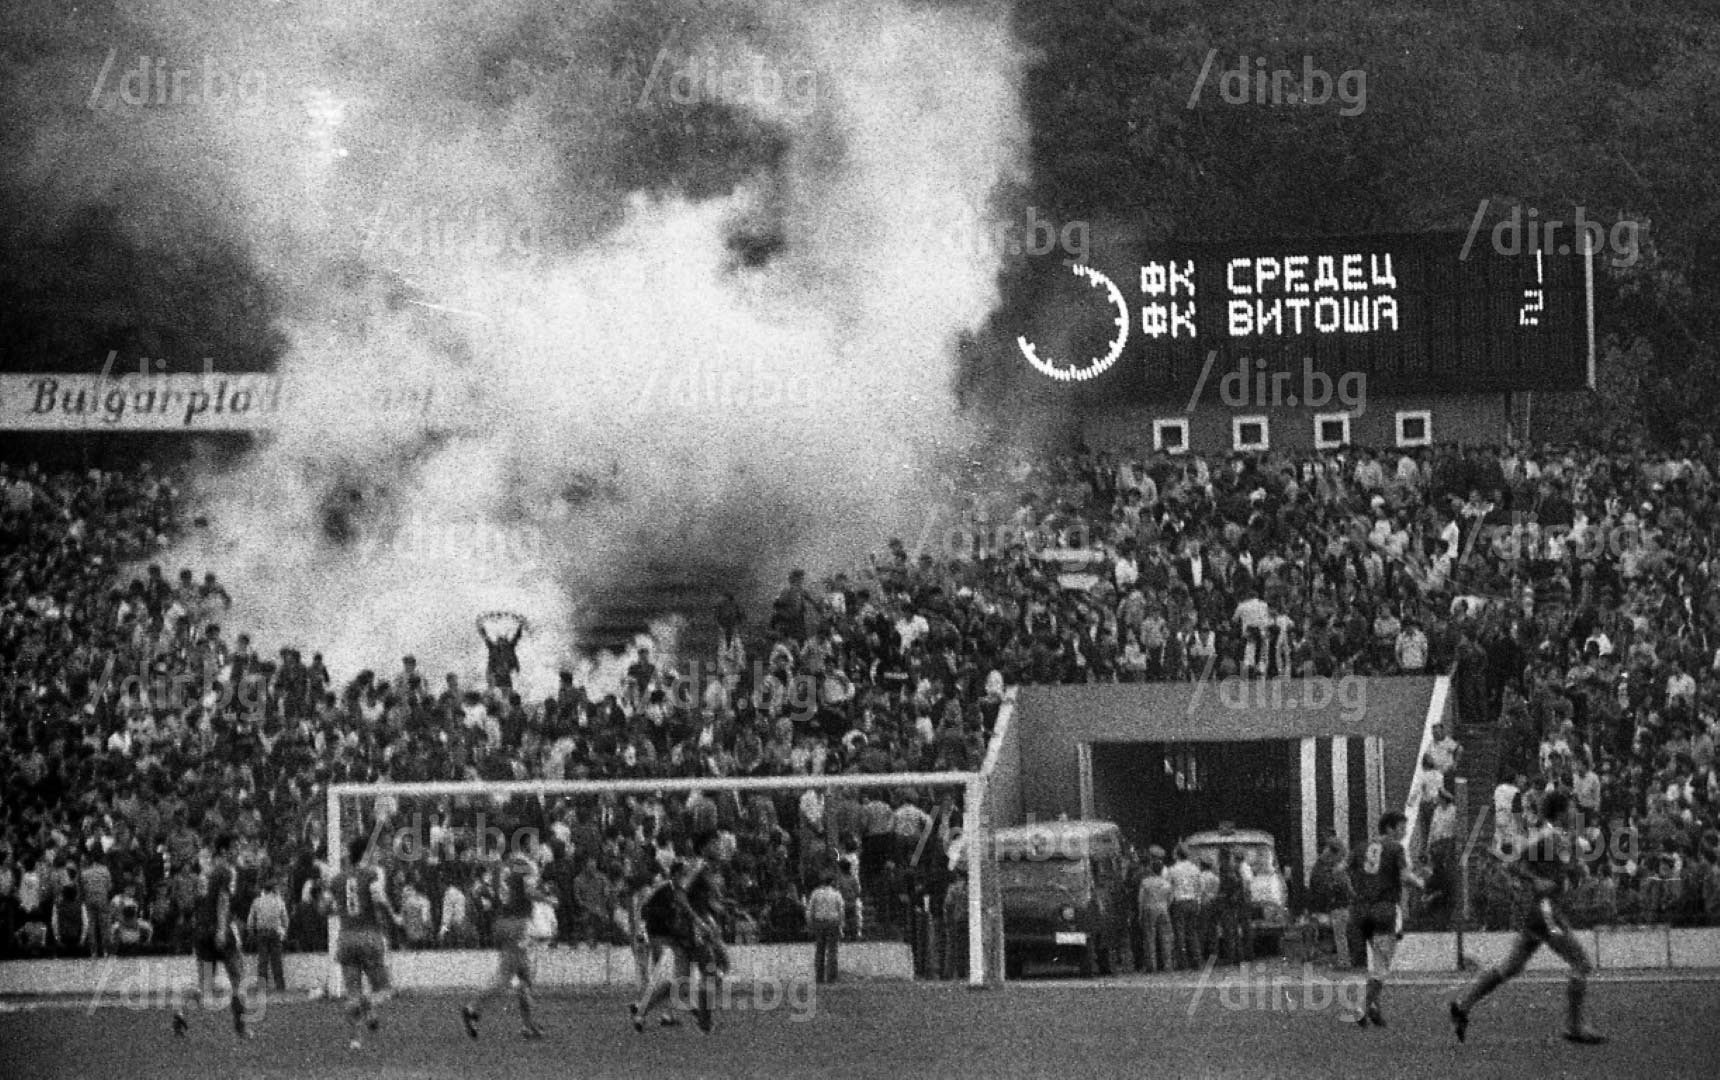 31 август 1985 г., стадион "Народна армия". Това е историческият първи двубой на Средец и Витоша, спечелен от "сините" с 1:2. Куриозно, във втората среща на новопрекръстените грандове, която пък е на "Герена", ЦСКА бие с 3:1 през декември същата година. Решението за смяната на имената е съпроводено и с такова мачовете им вече да не са на Националния стадион - един вид, това вече не са същите грандове и вече не е вечно дерби.